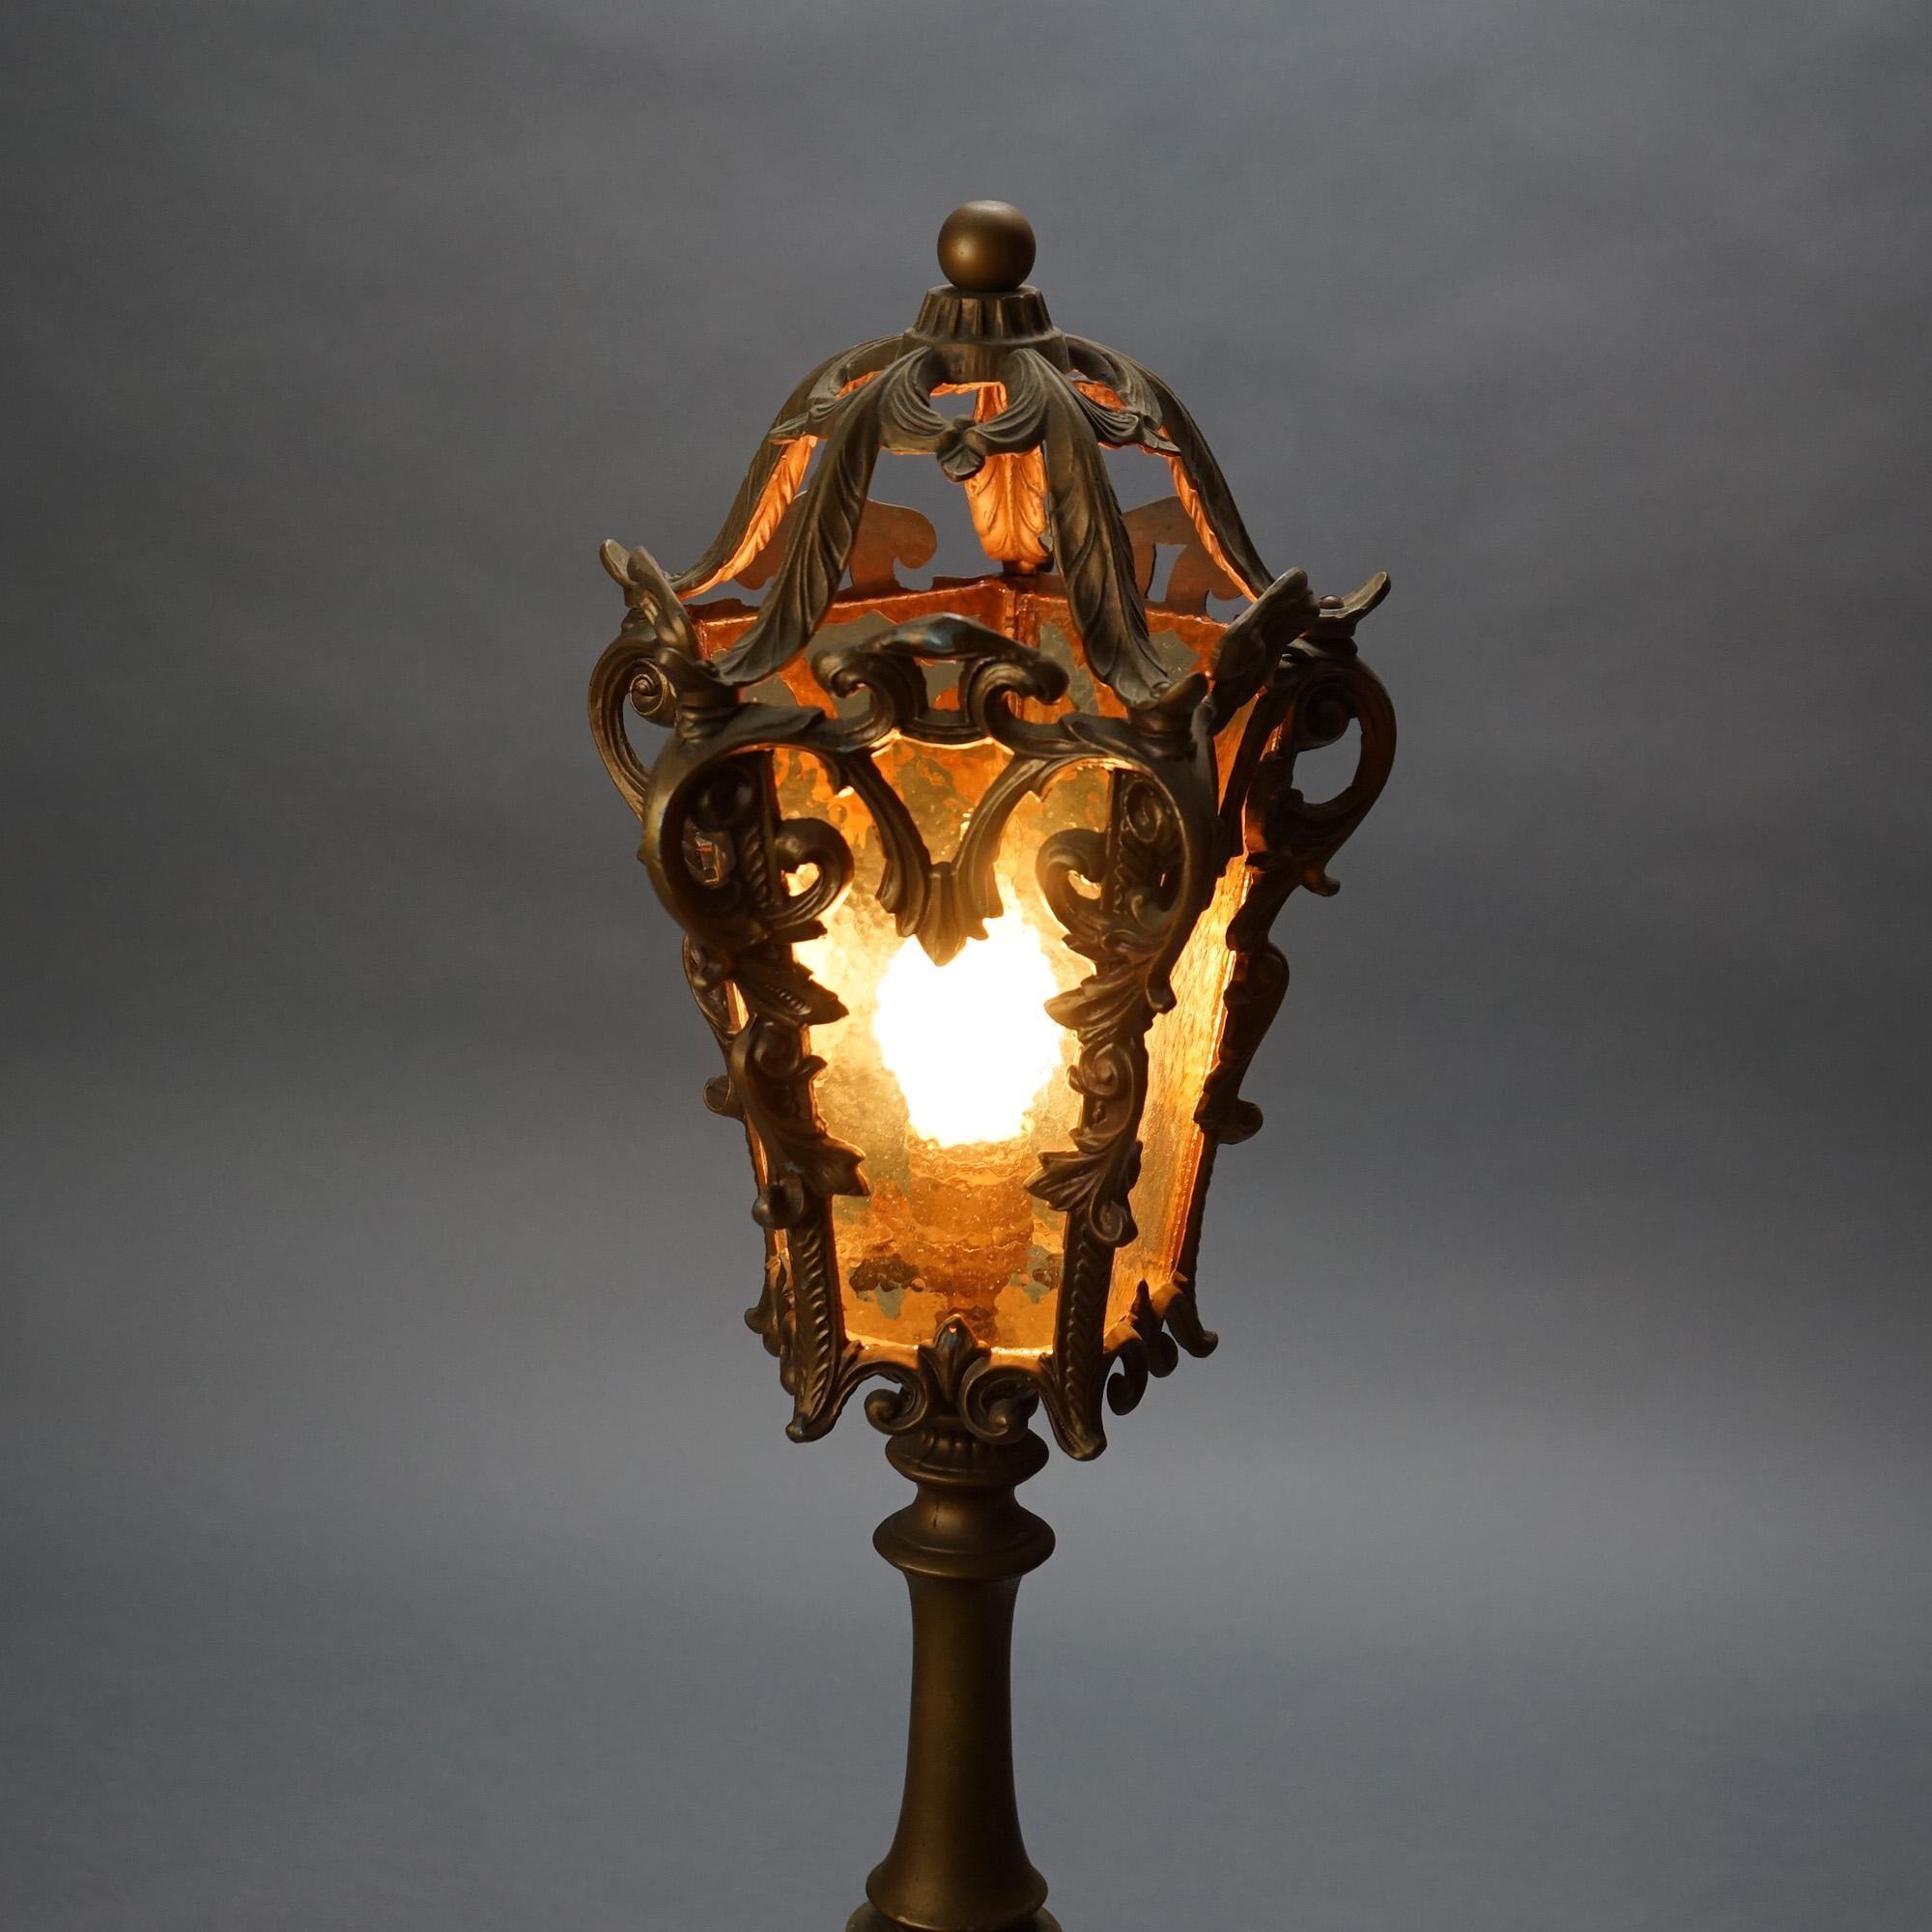 Antike Arts & Crafts Hammered Amber Glass Torchiere Tischlampe in der Straße Laterne Form mit Foliate Elemente und Marmor Basis C1920

Maße - 27,5 